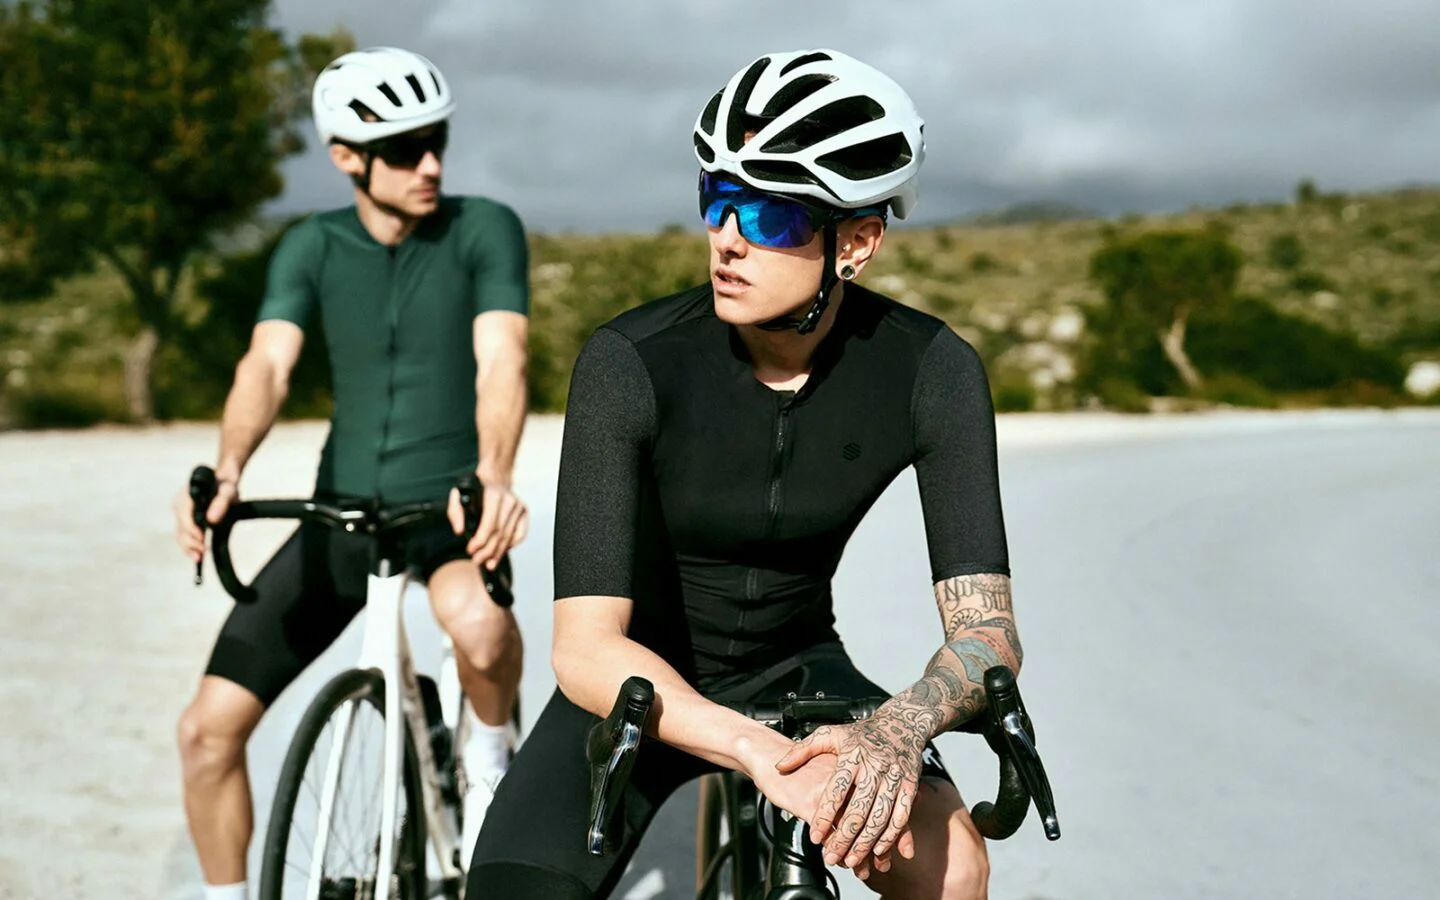 Qué gafas de sol deportivas elegir para ciclismo, triatlón